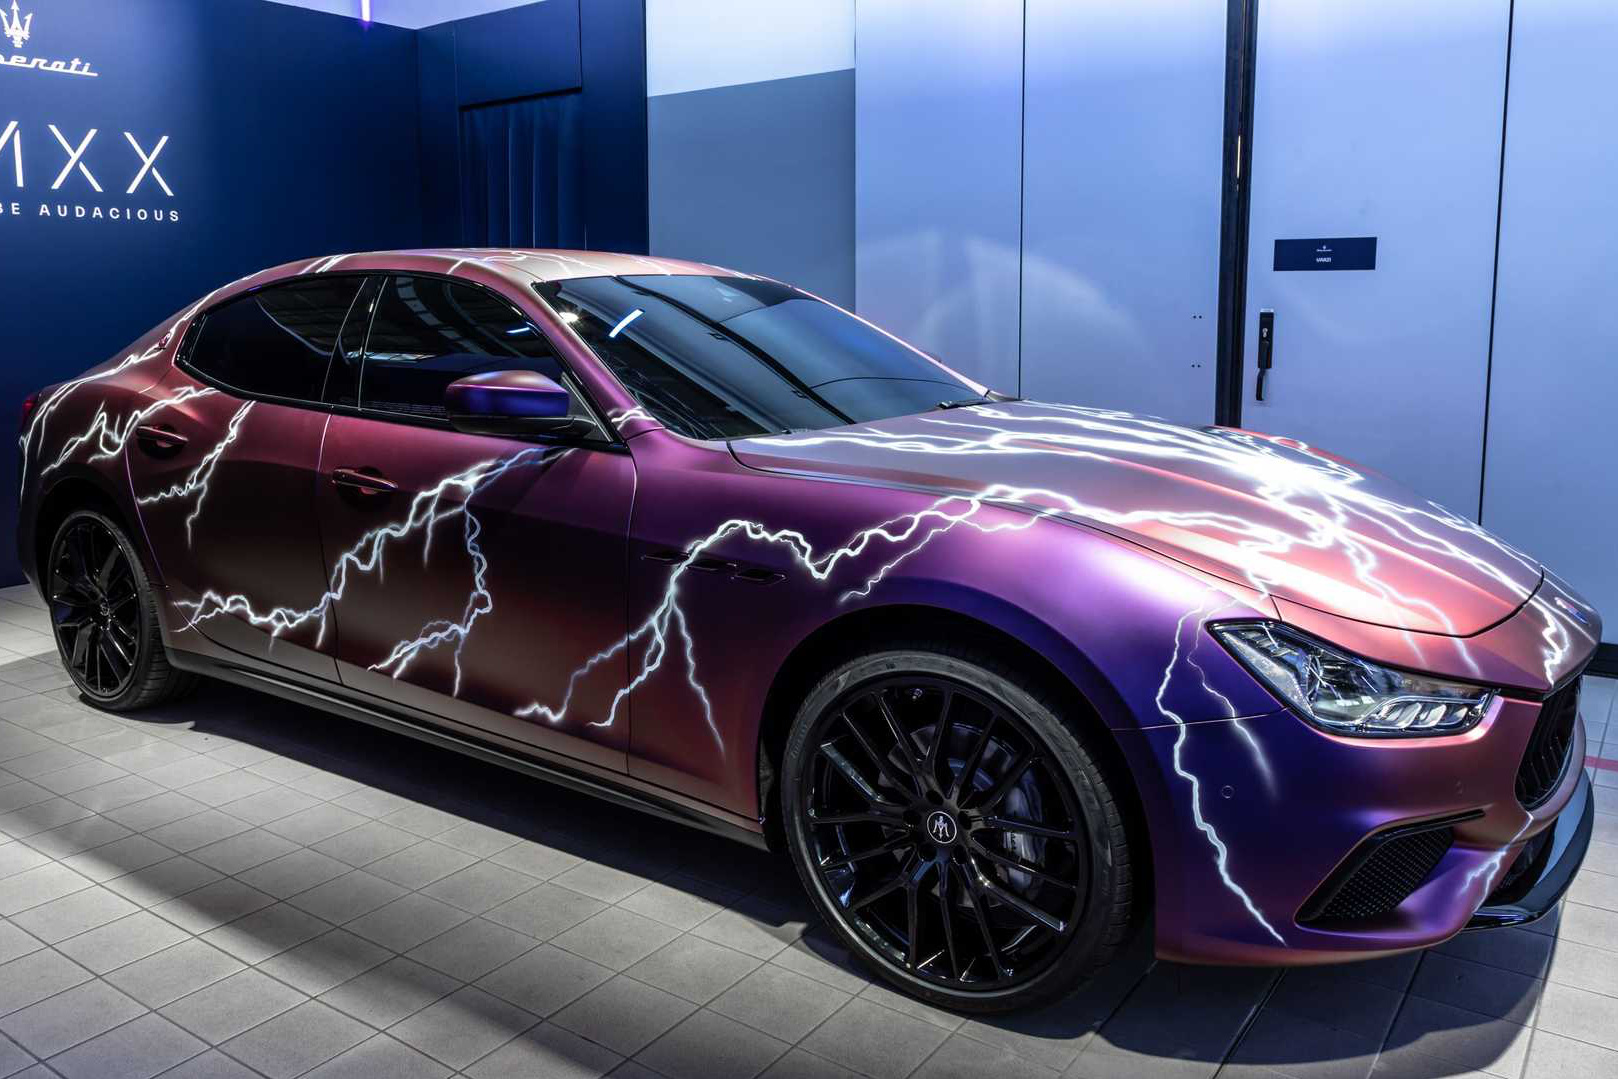 16 mẫu xe Maserati sẽ ra mắt trong vòng 3 năm tới: Điện hóa cả đội hình, thêm SUV mới